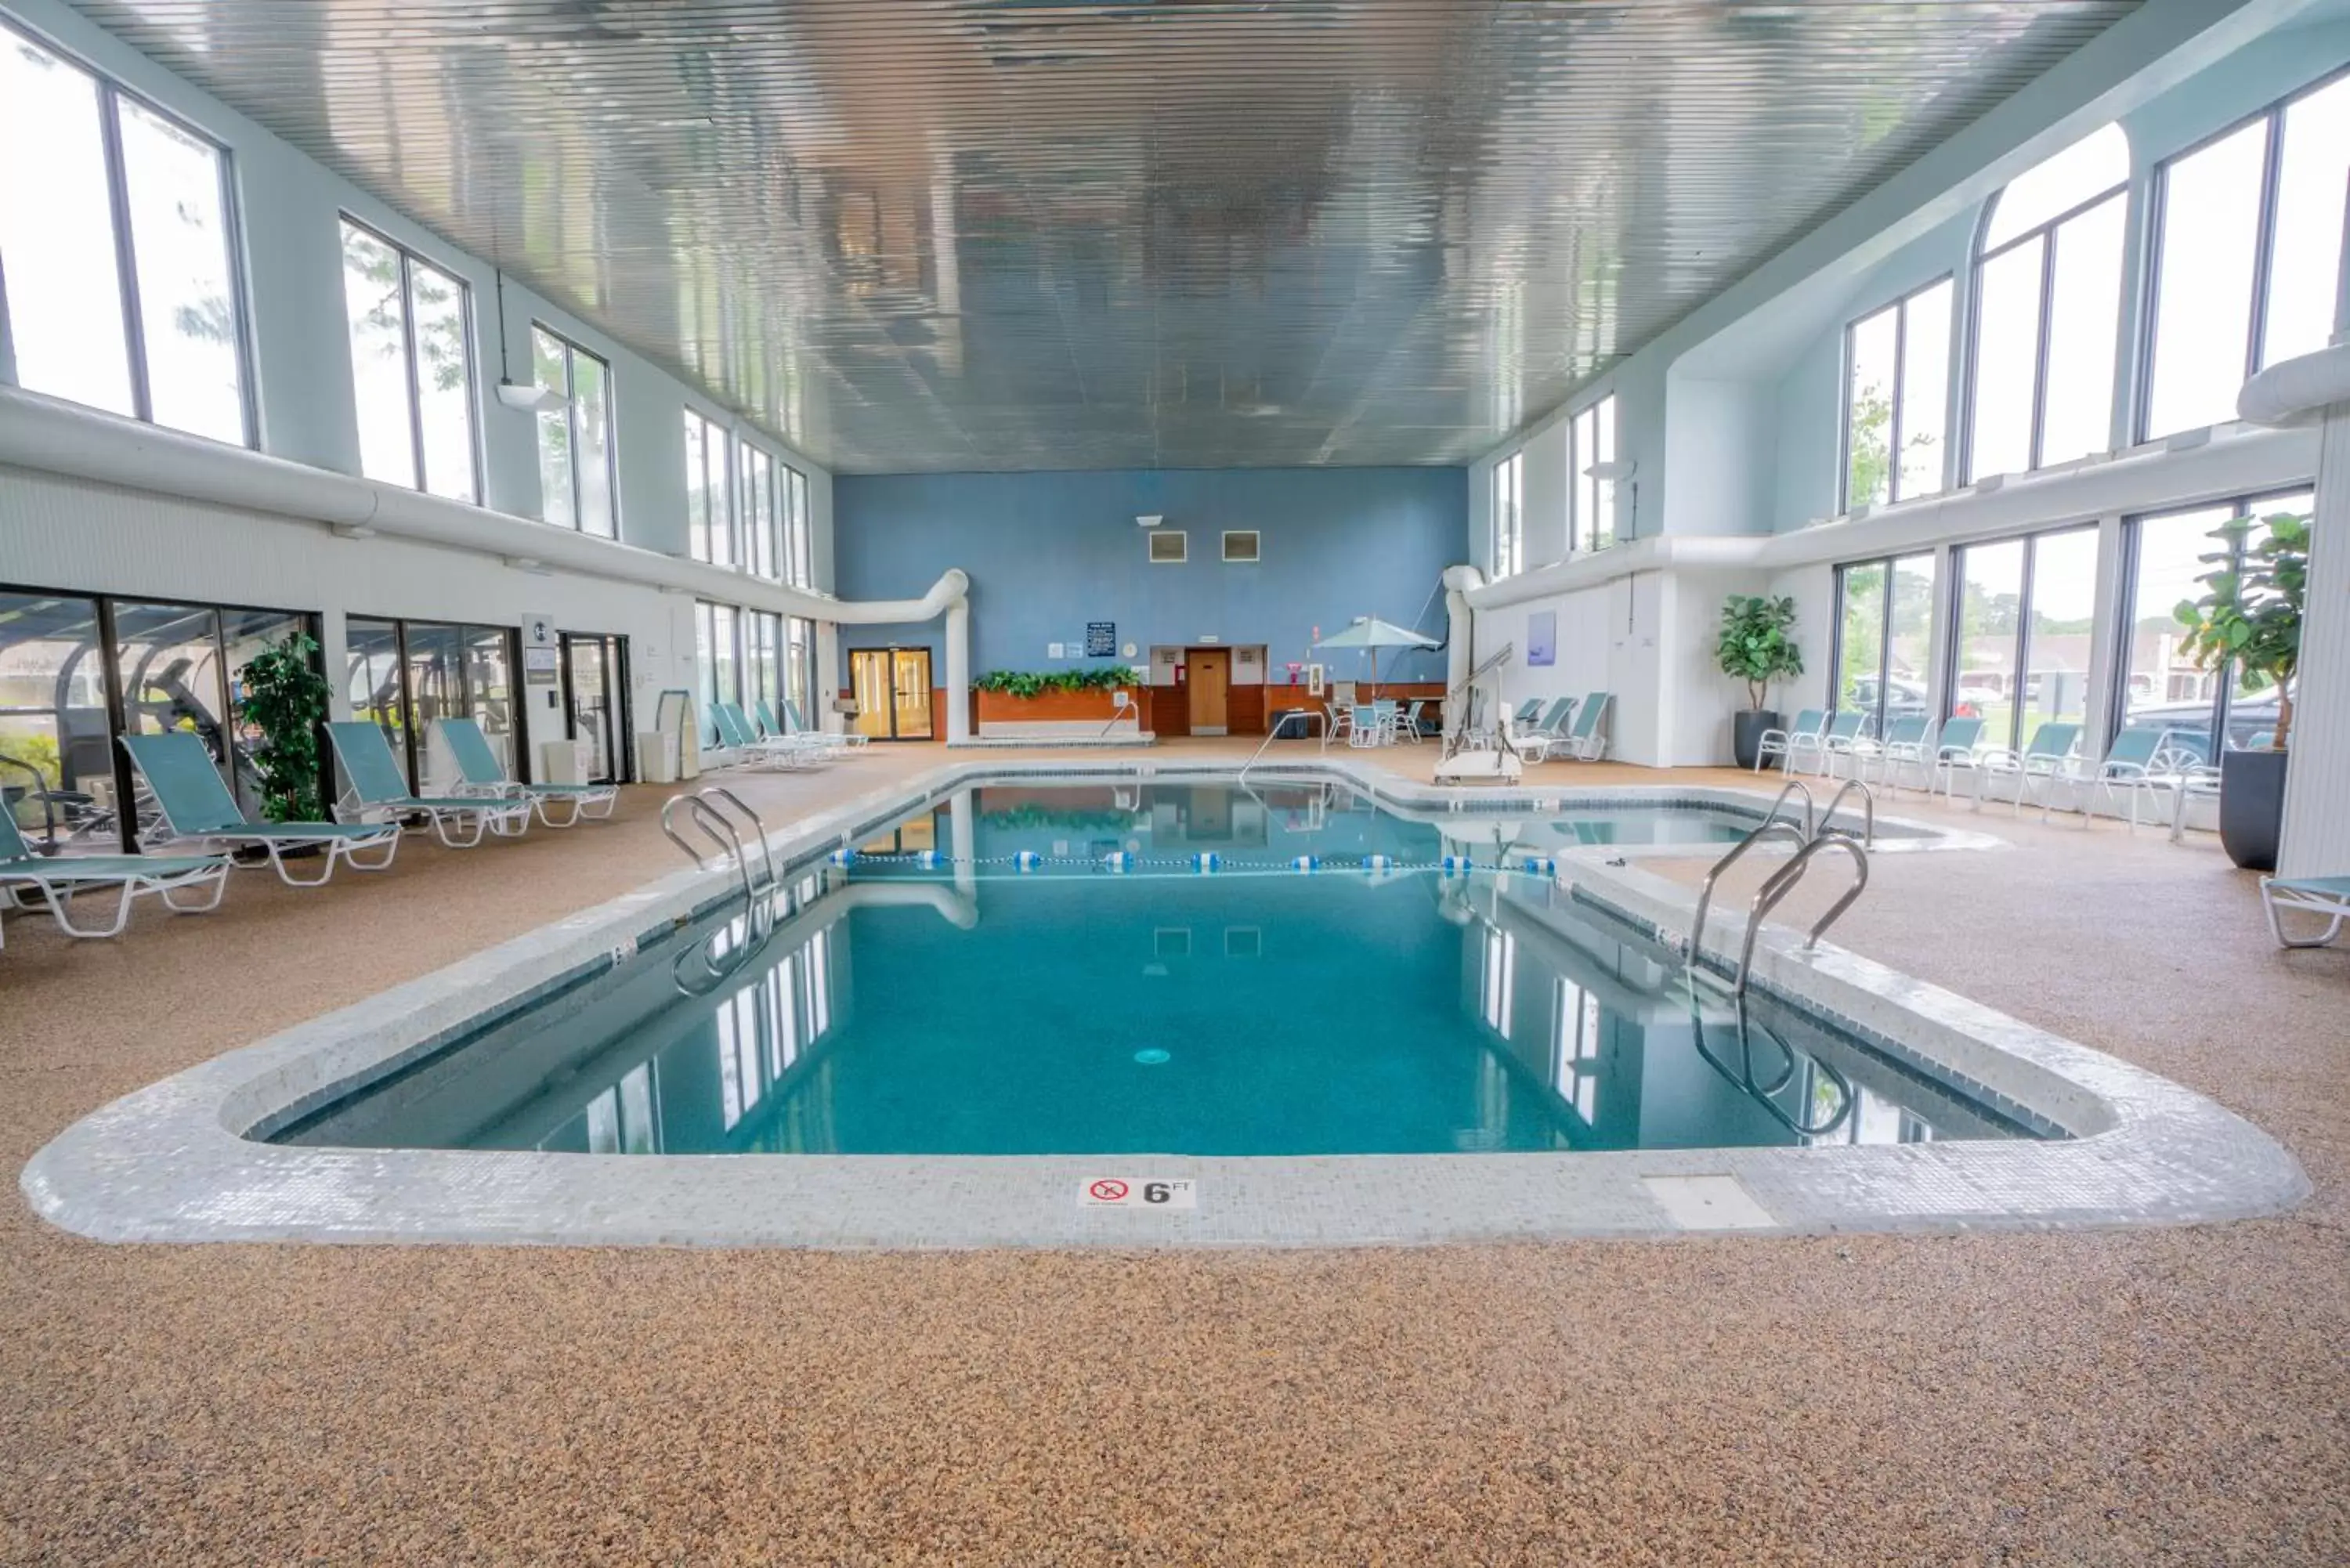 Swimming Pool in All Seasons Resort